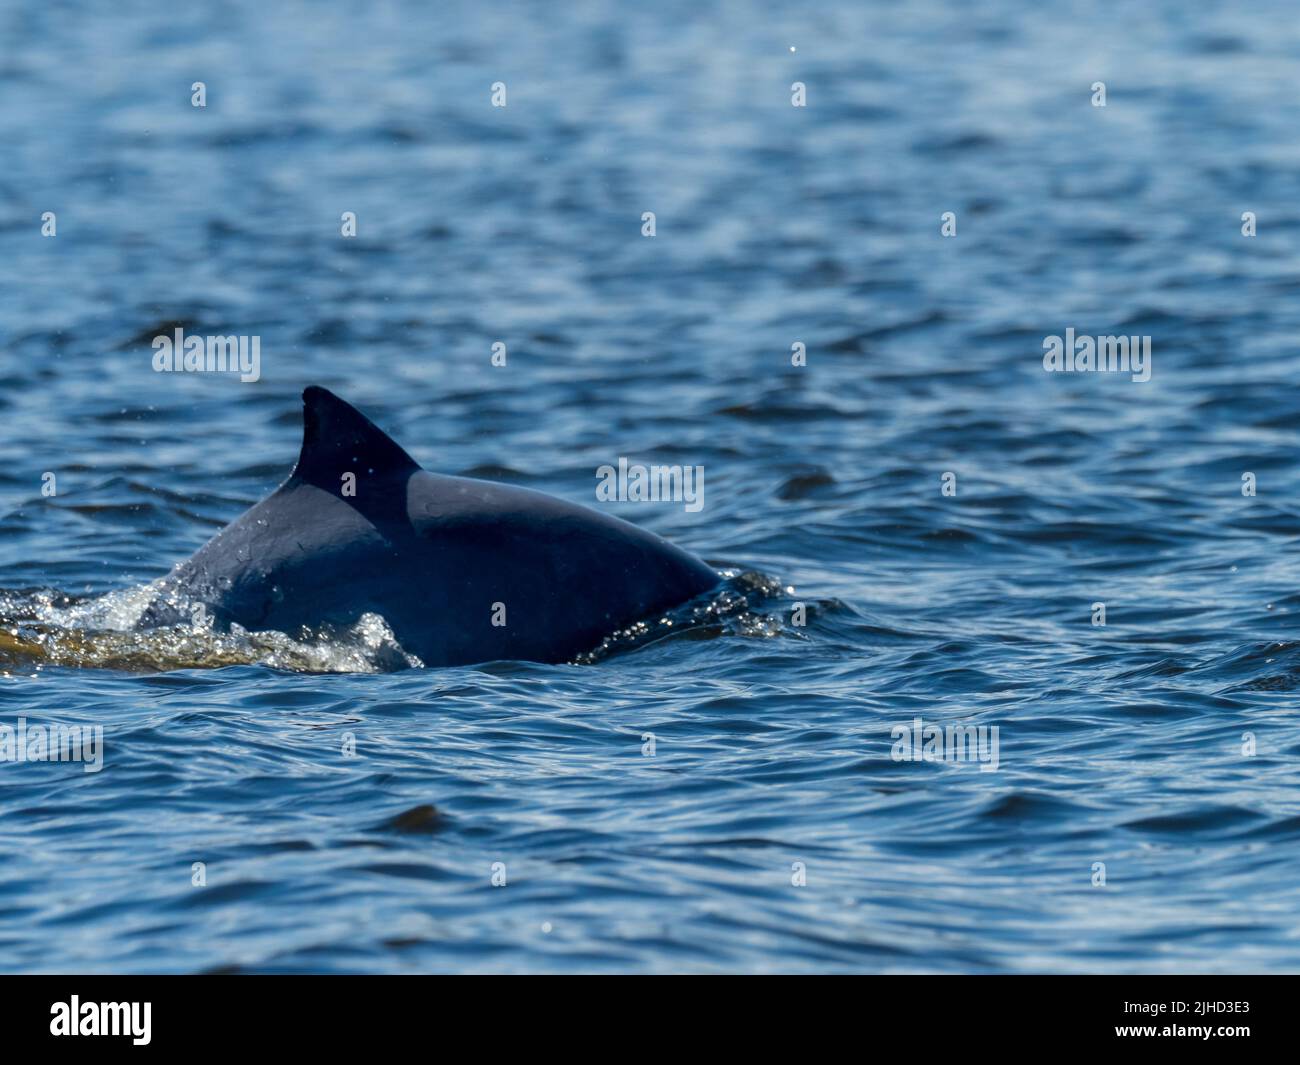 Tucuxi, Sotalia fluviatilis, or the gray river dolphin along the Amazon river in Peru Stock Photo